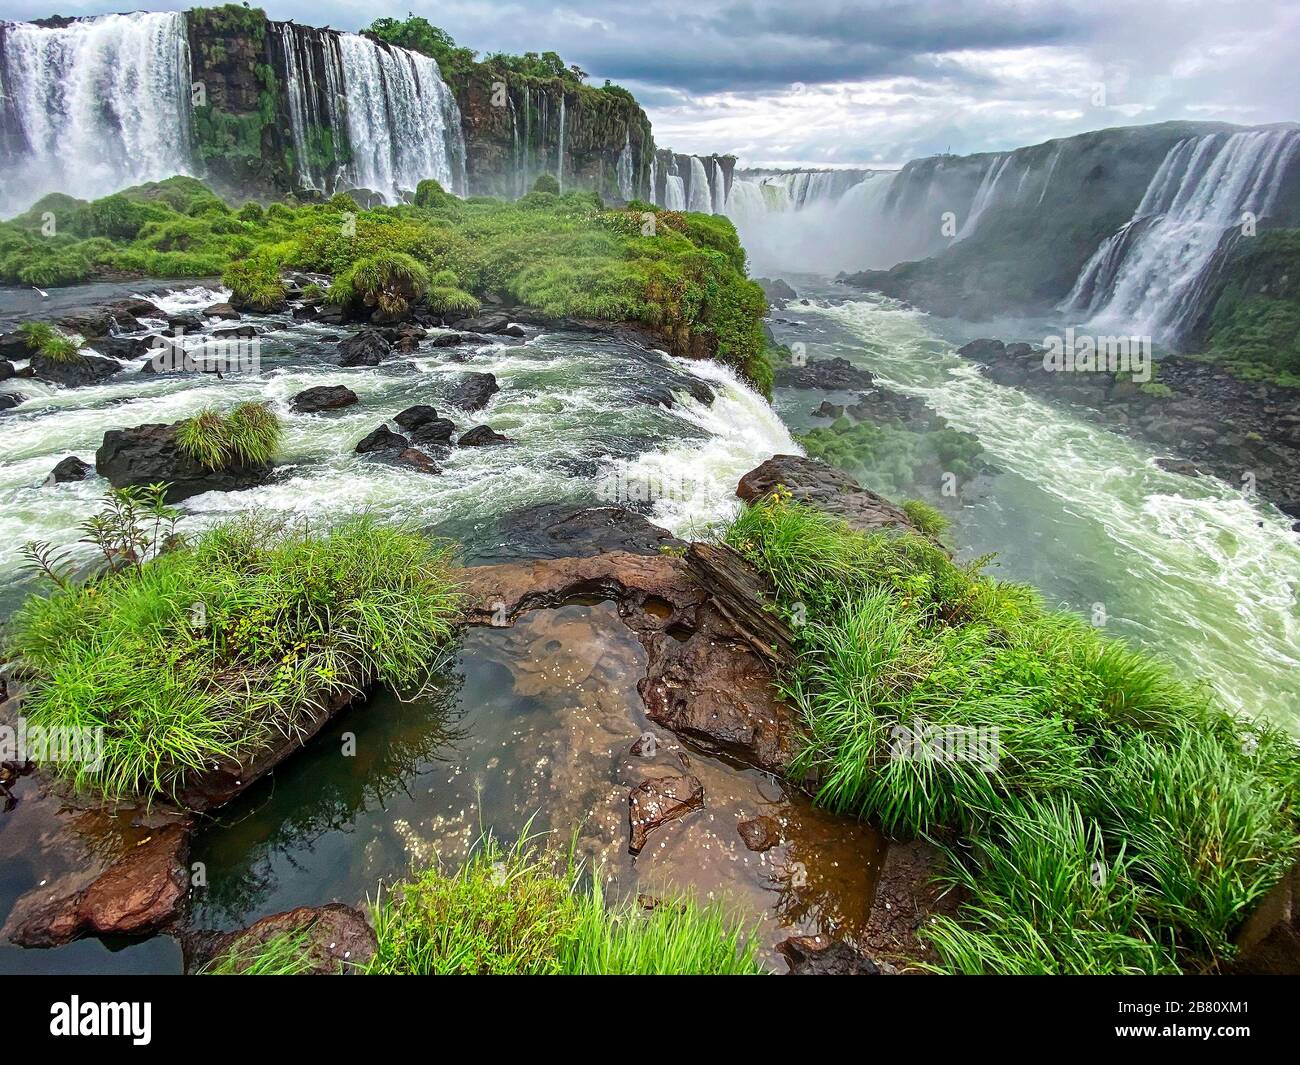 Parc national des chutes d'Iguazu; grandes chutes d'eau, rapides, végétation, nature, rochers, puissants, Iguazu; Iguacu; Amérique du Sud, Brésil; été Banque D'Images